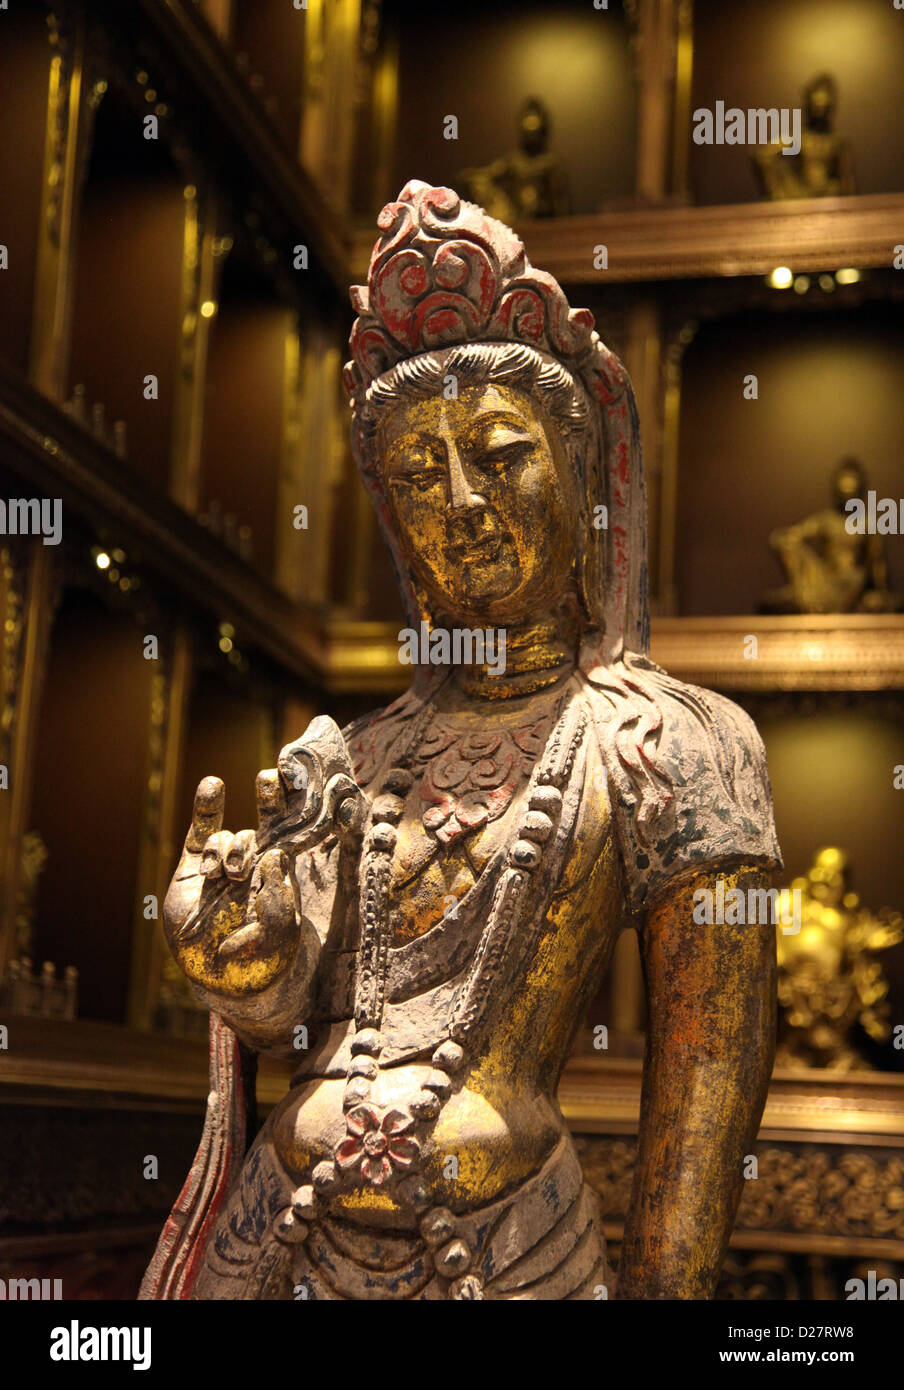 C'est une photo d'une déesse Shiva. C'est une statue ou une sculpture dans un musée avec quelques autres dans l'arrière-plan n'est pas mise au point Banque D'Images